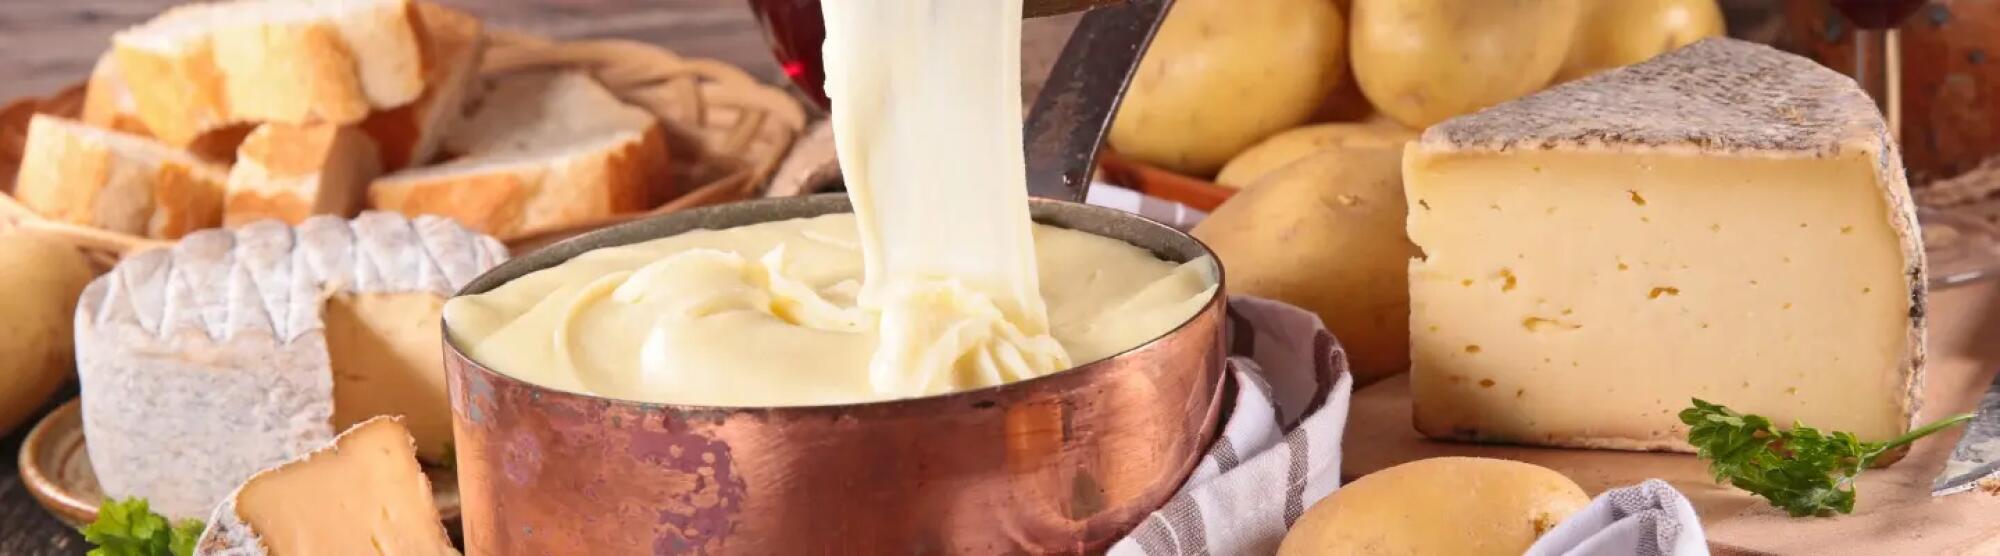 LA02_aligotcheese-and-potato-fondue-picture-id496380176